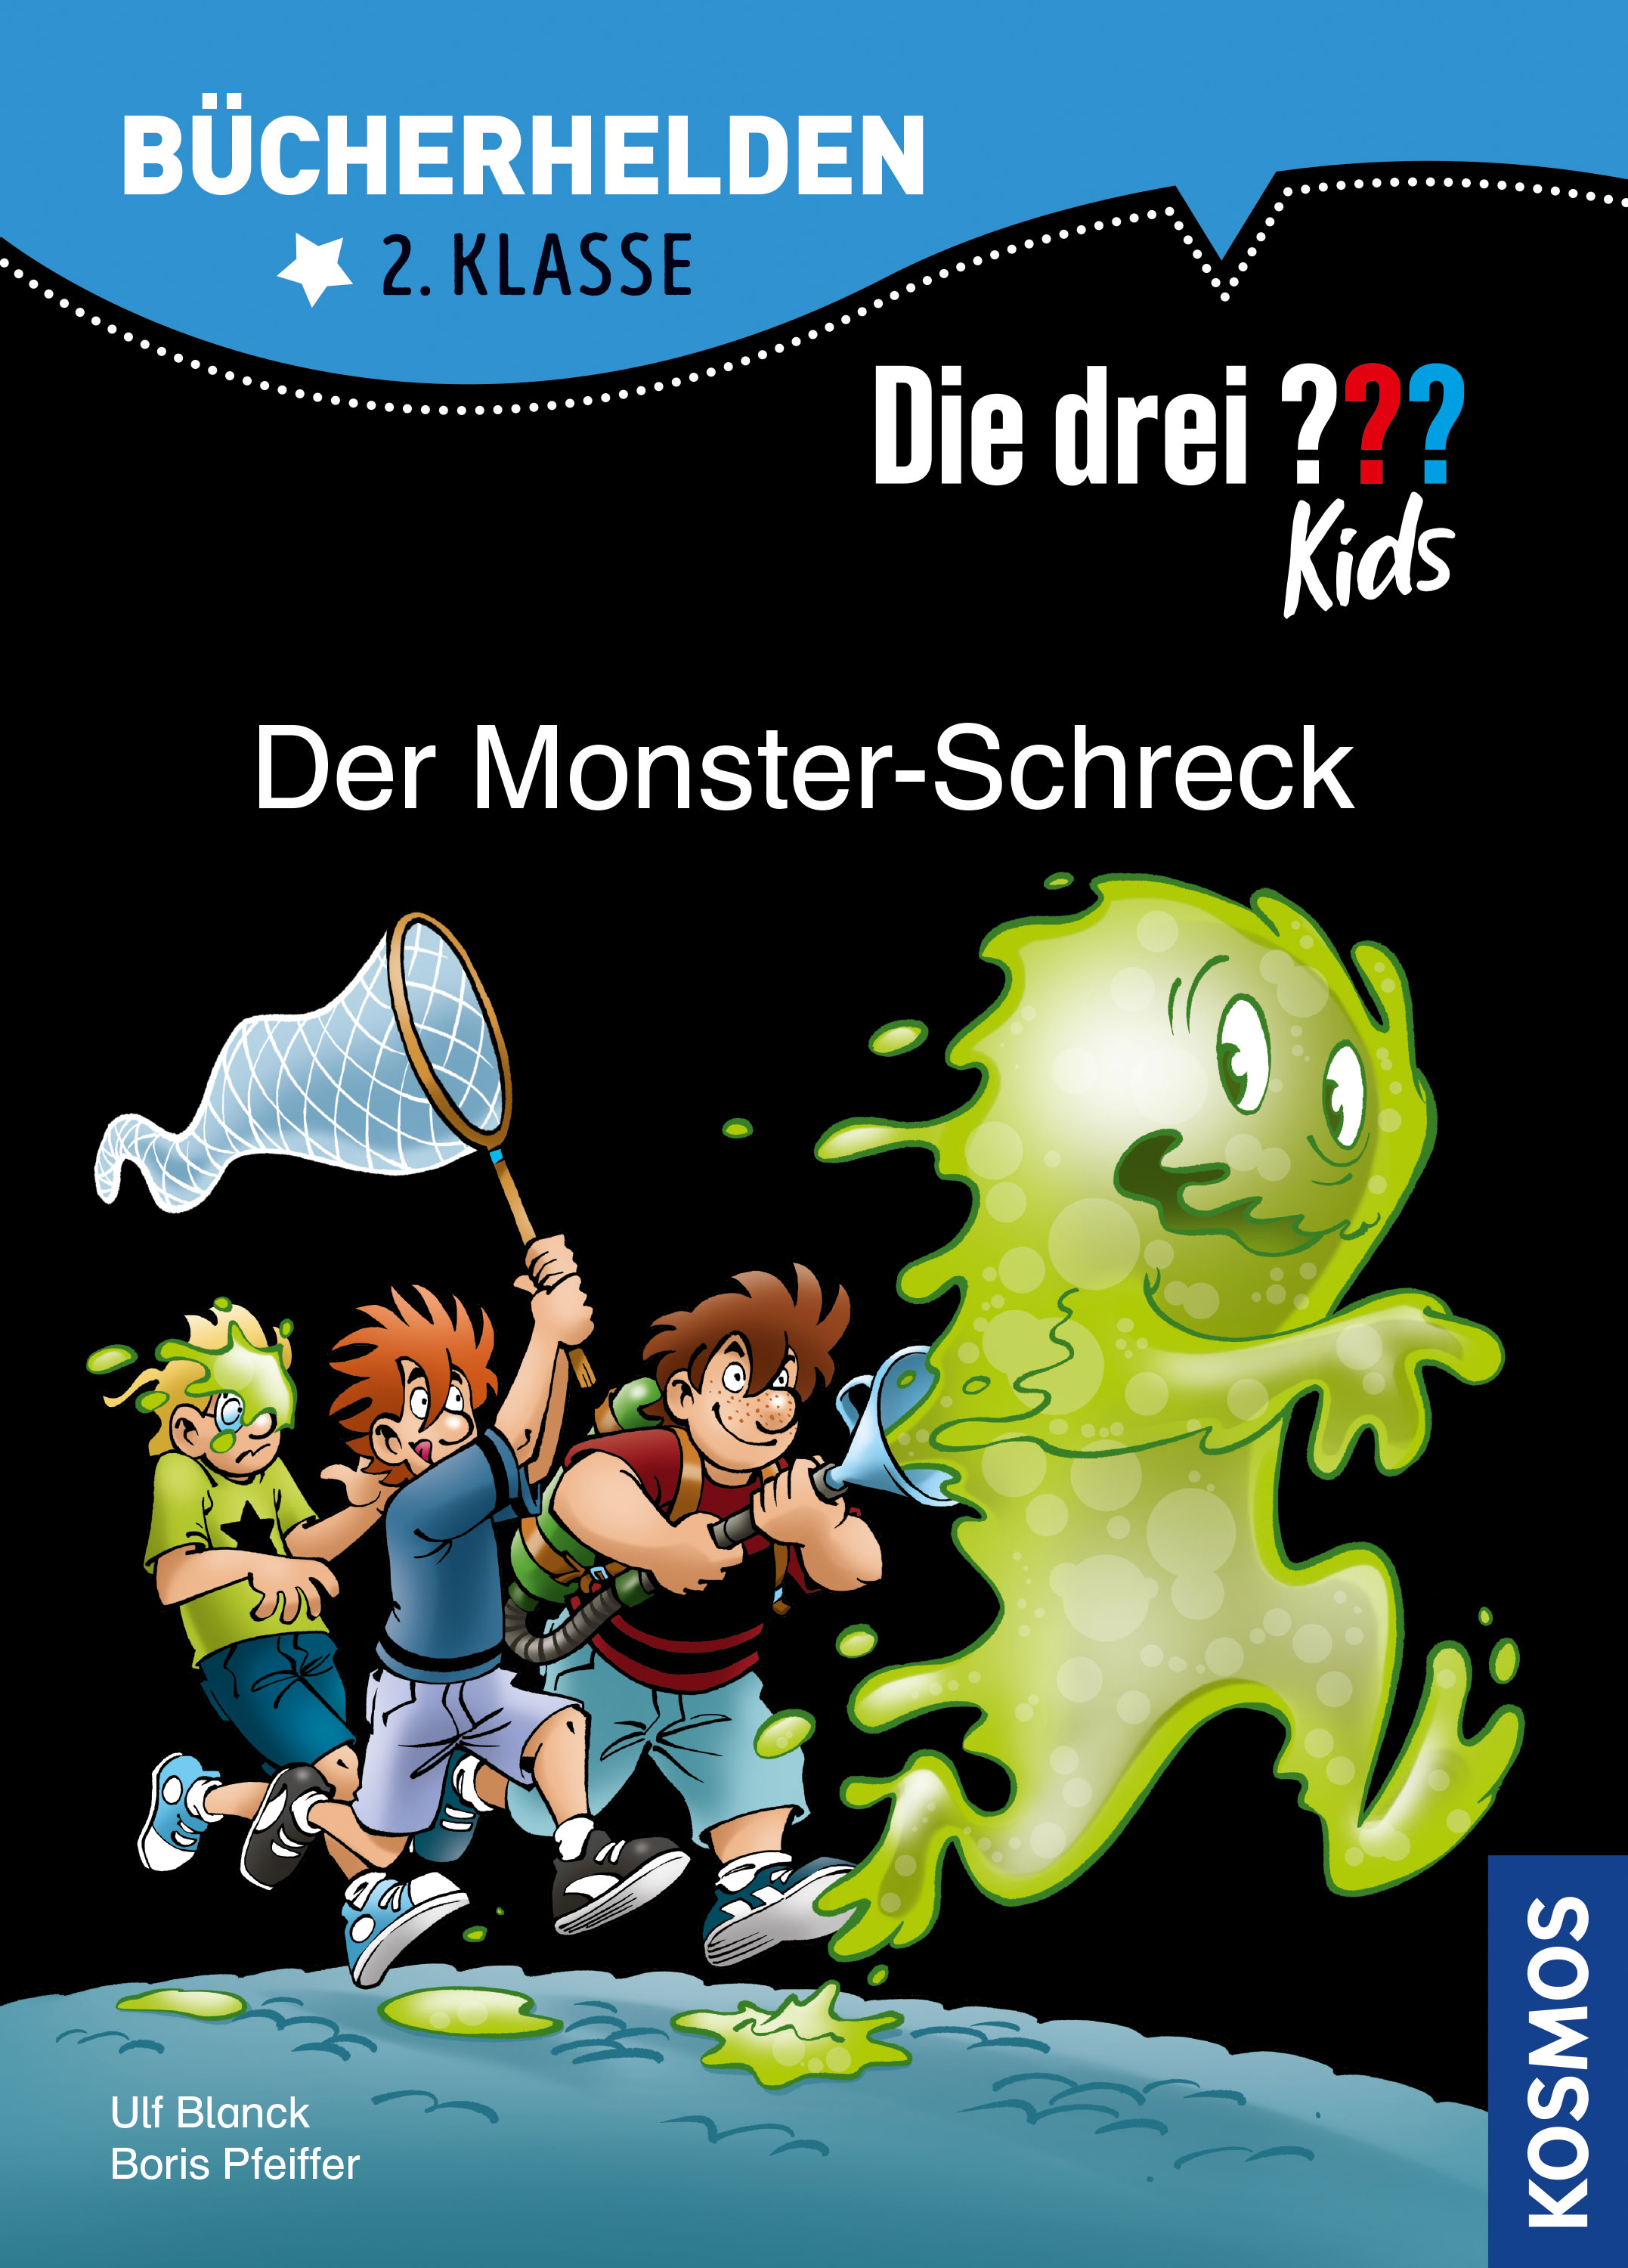 Die Drei ??? (Fragezeichen) Kids, Buch-Special: Der Monster-Schreck (Bücherhelden 2. Klasse) 